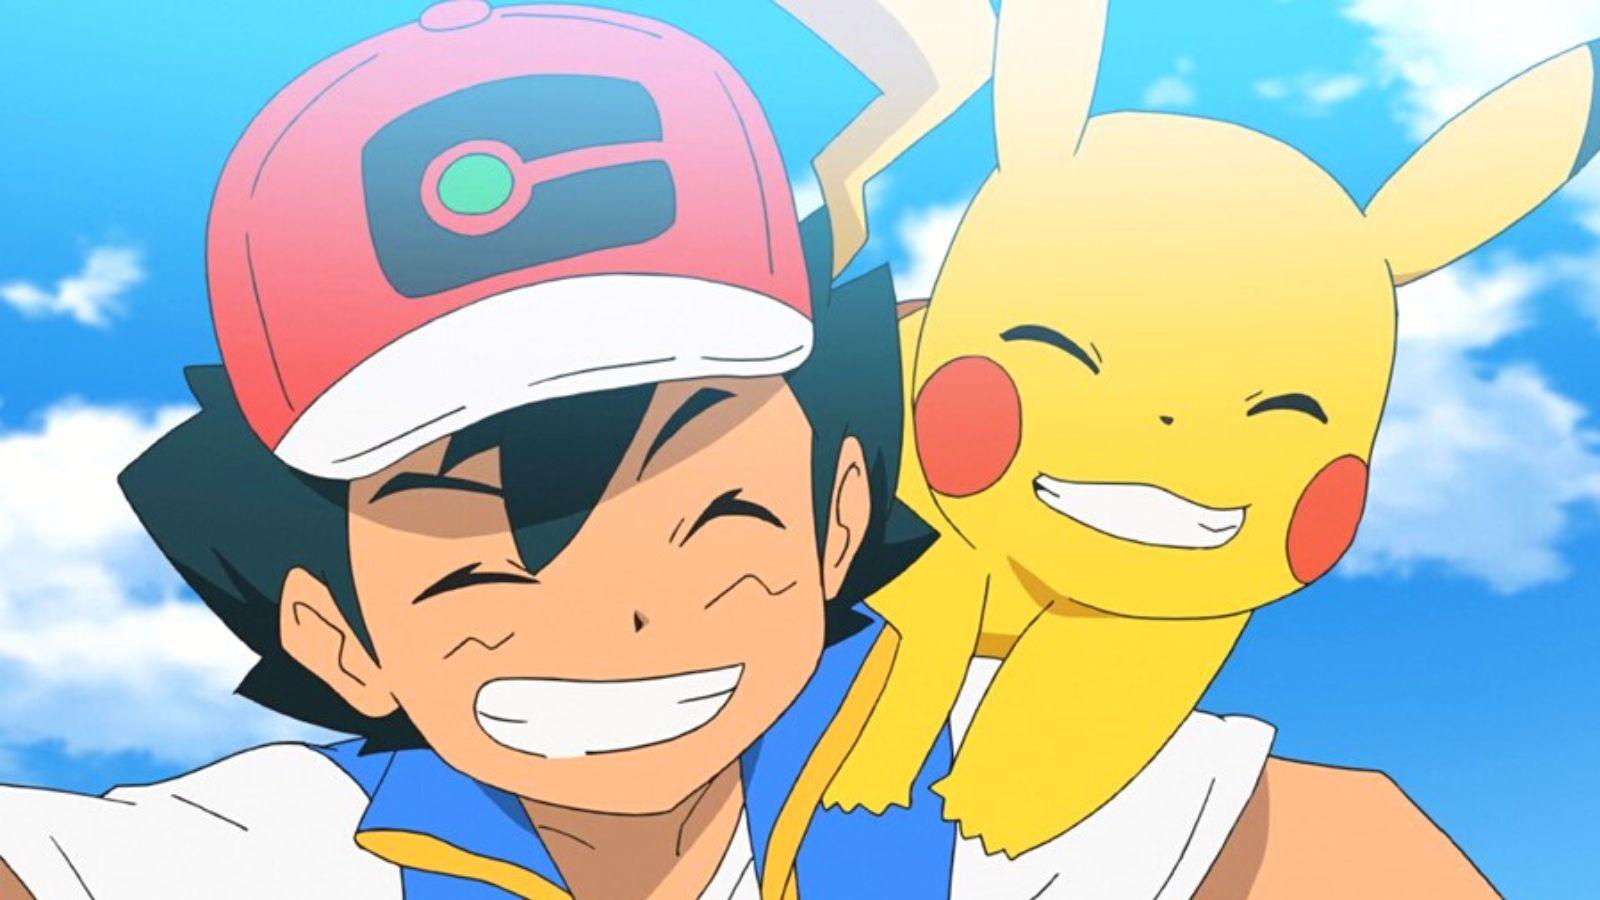 Watch Pokémon: To Be a Pokémon Master: Ultimate Journeys: The